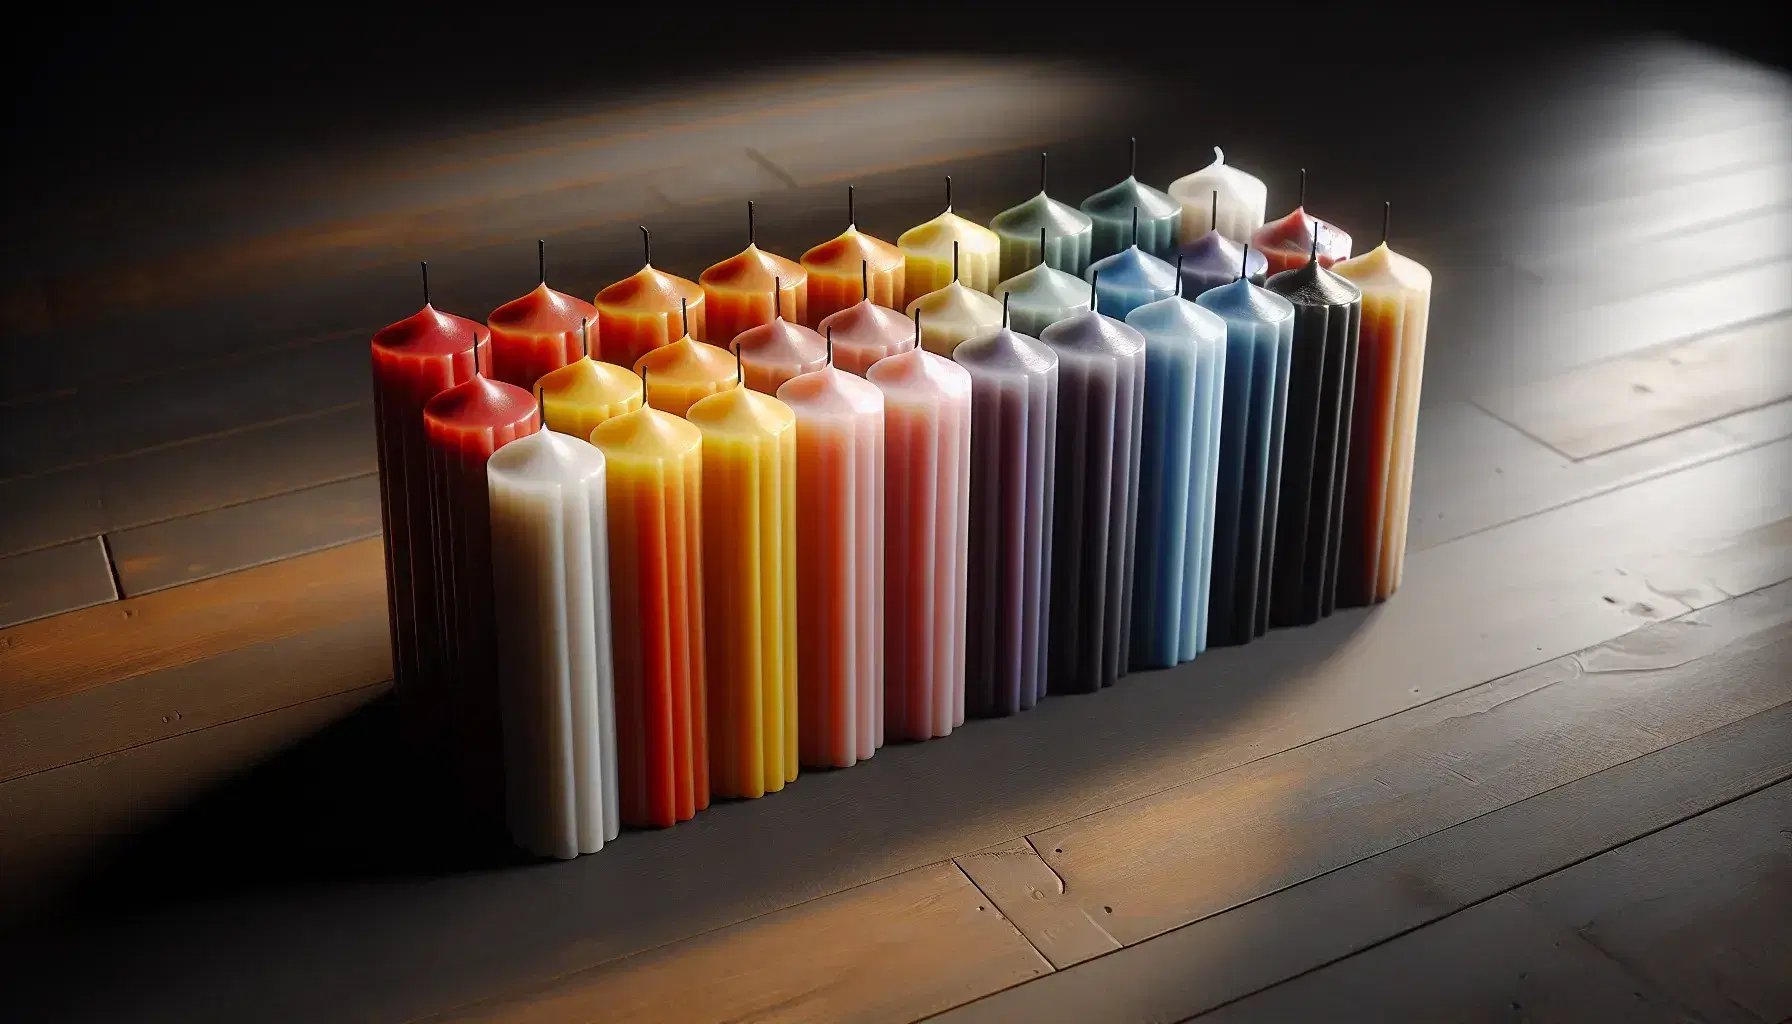 Conjunto de diez velas de cera de colores variados en fila sobre superficie de madera oscura, con sombras suaves a la derecha.